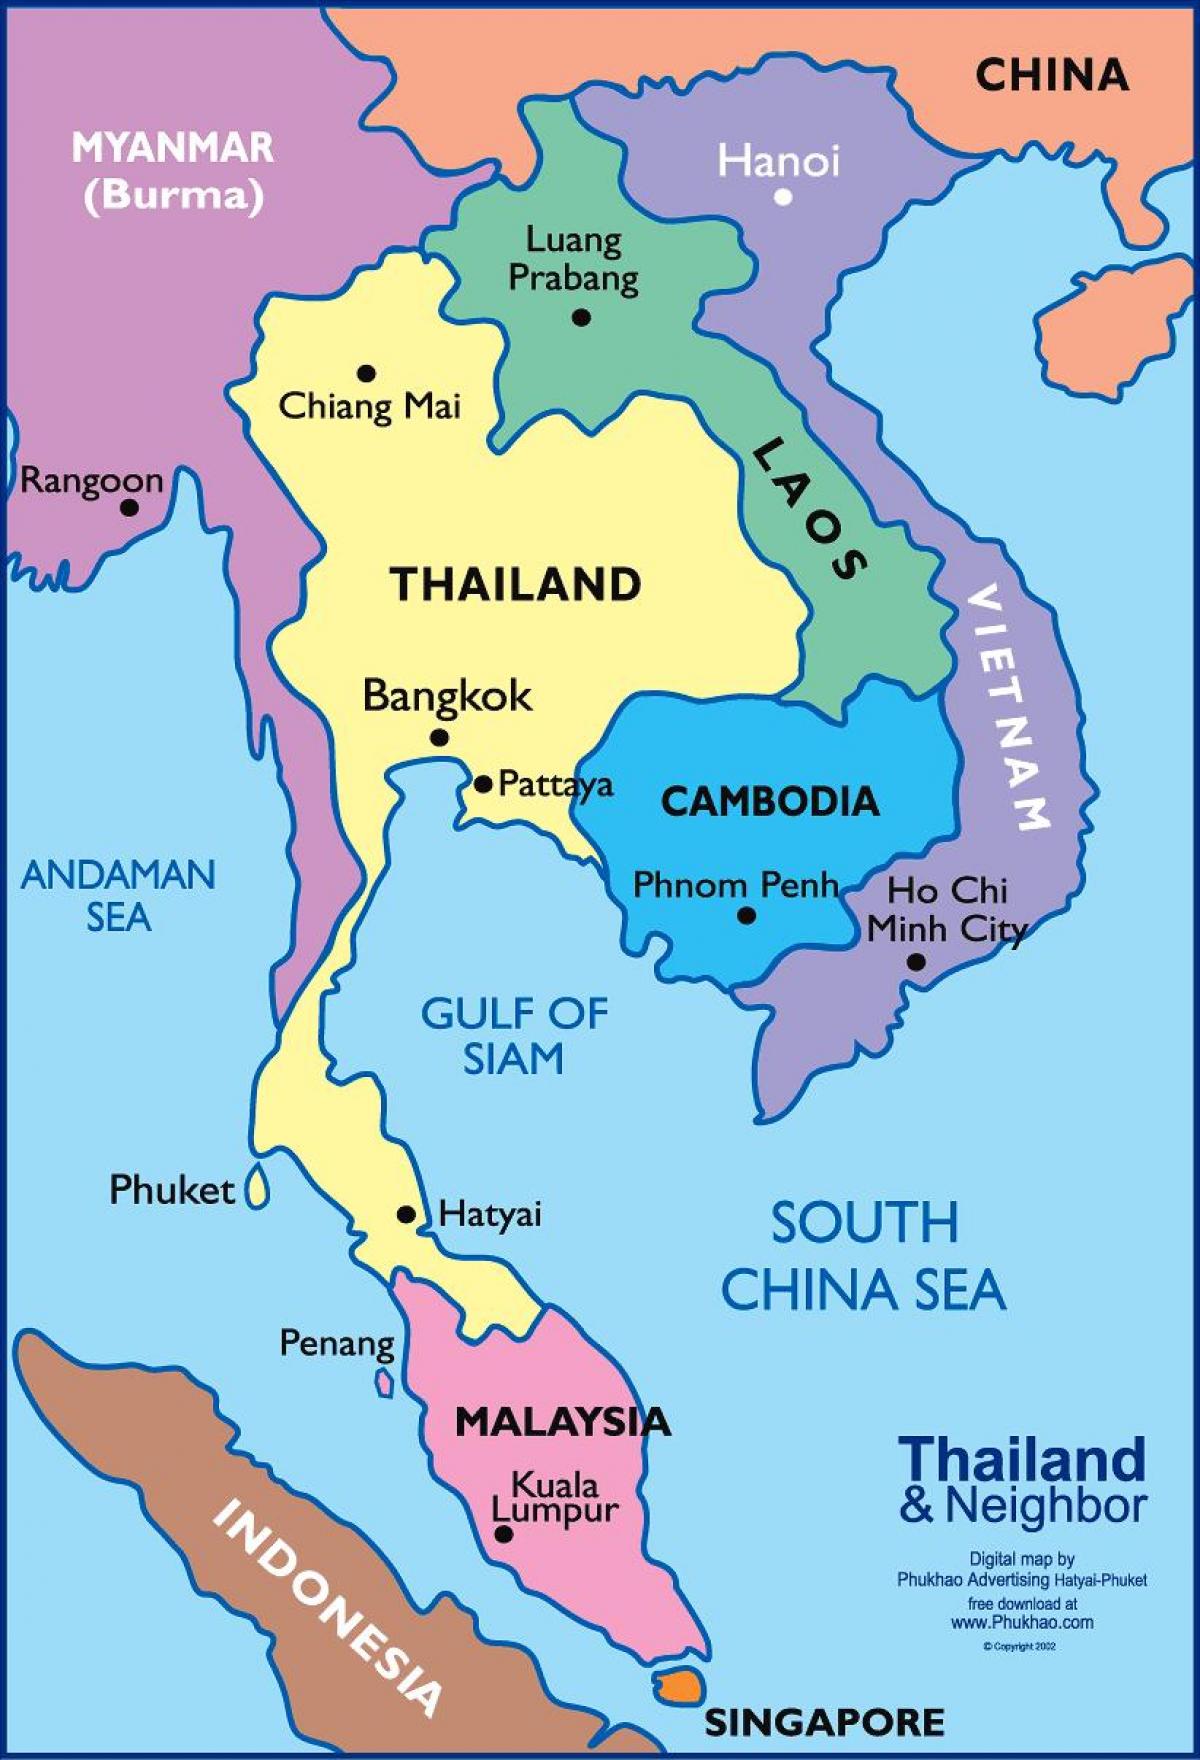 מפה של בנגקוק מיקום